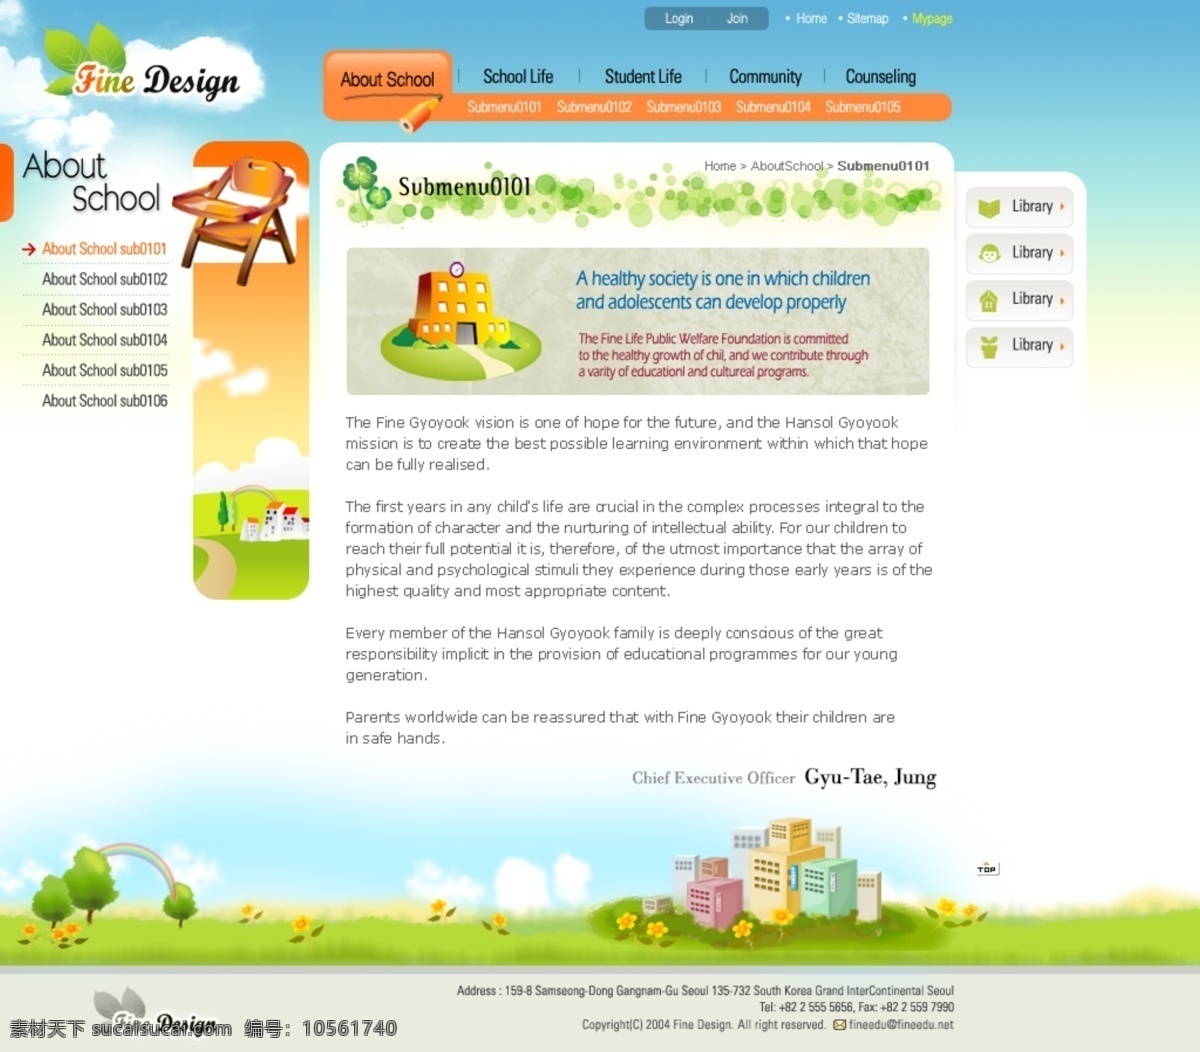 教育 类 网站 内页 卡通网页设计 网页设计素材 网页设计 源文件 网站内页设计 学校网页设计 儿童网页设计 网页素材 网页模板